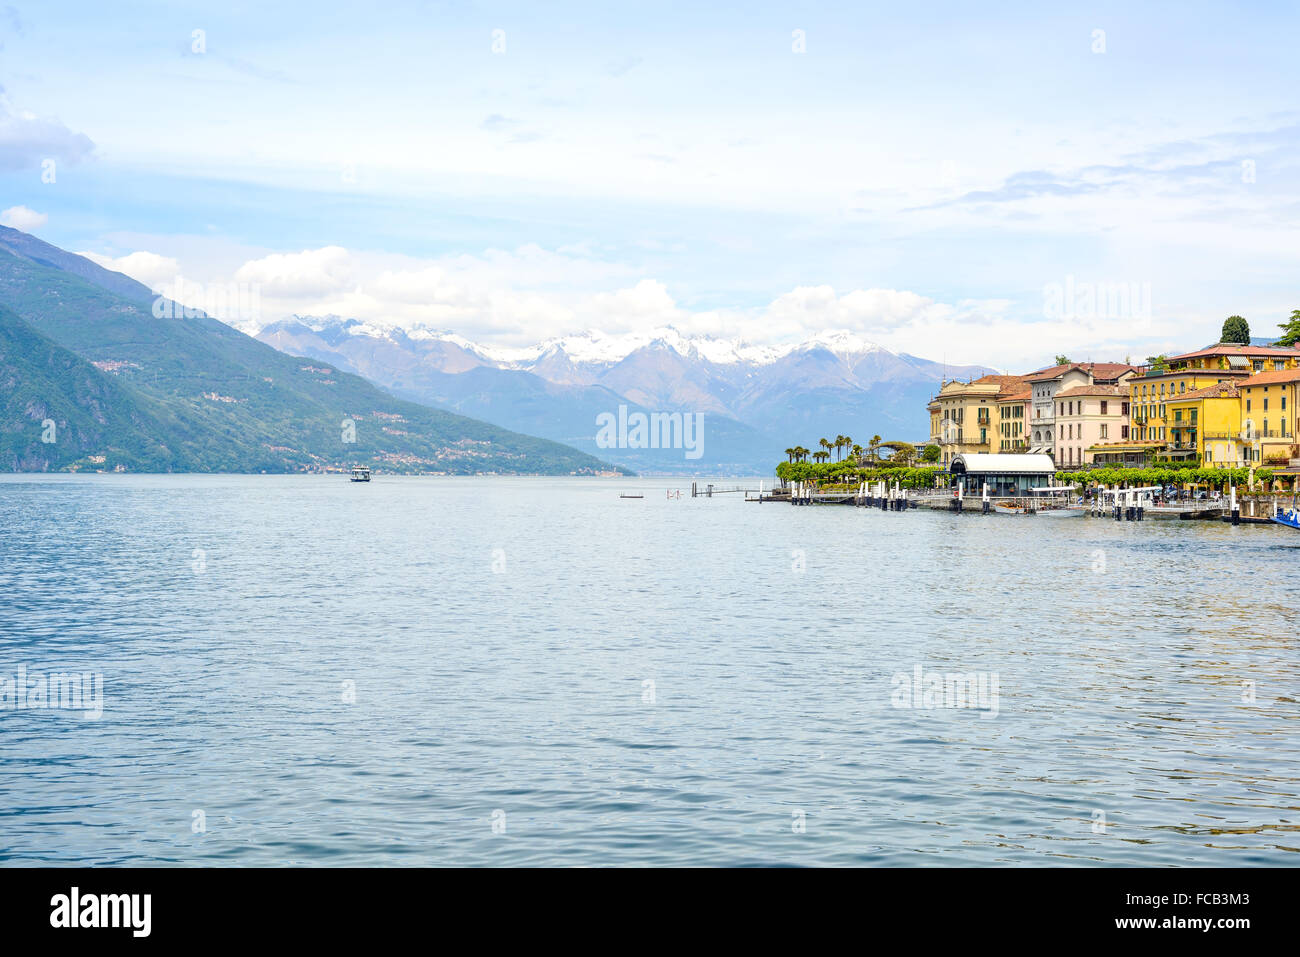 Bellagio Stadt Como Lake District. Landschaft mit Marina und traditionelle italienische See Dorf. Auf Hintergrund Alpen Berge co Stockfoto